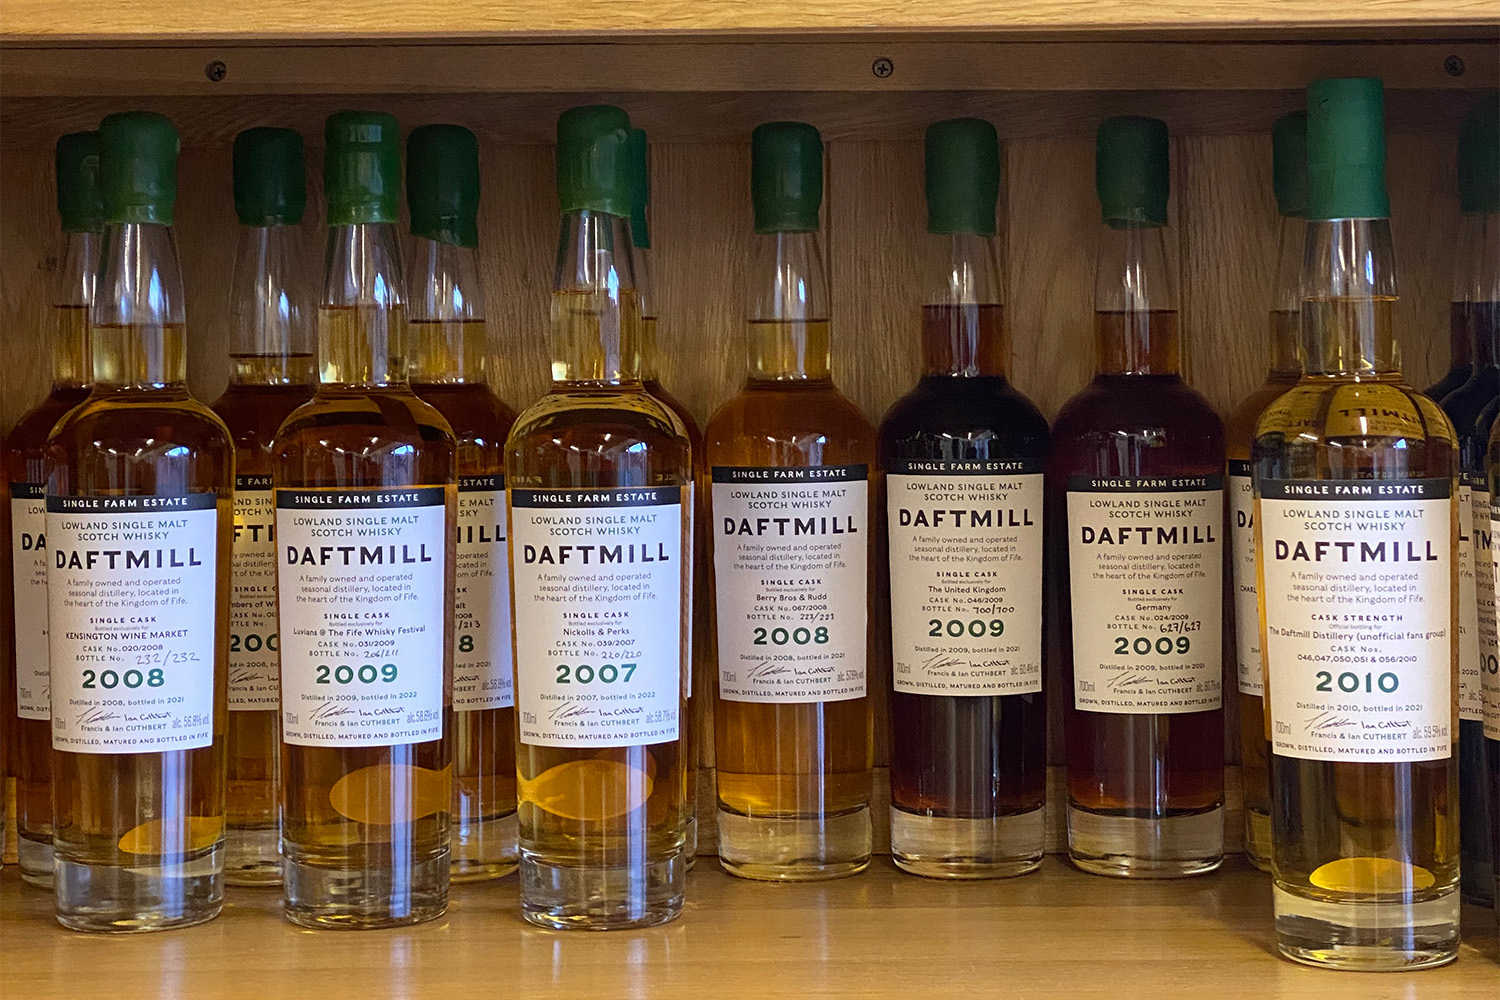 Bottles of Daftmill Scotch